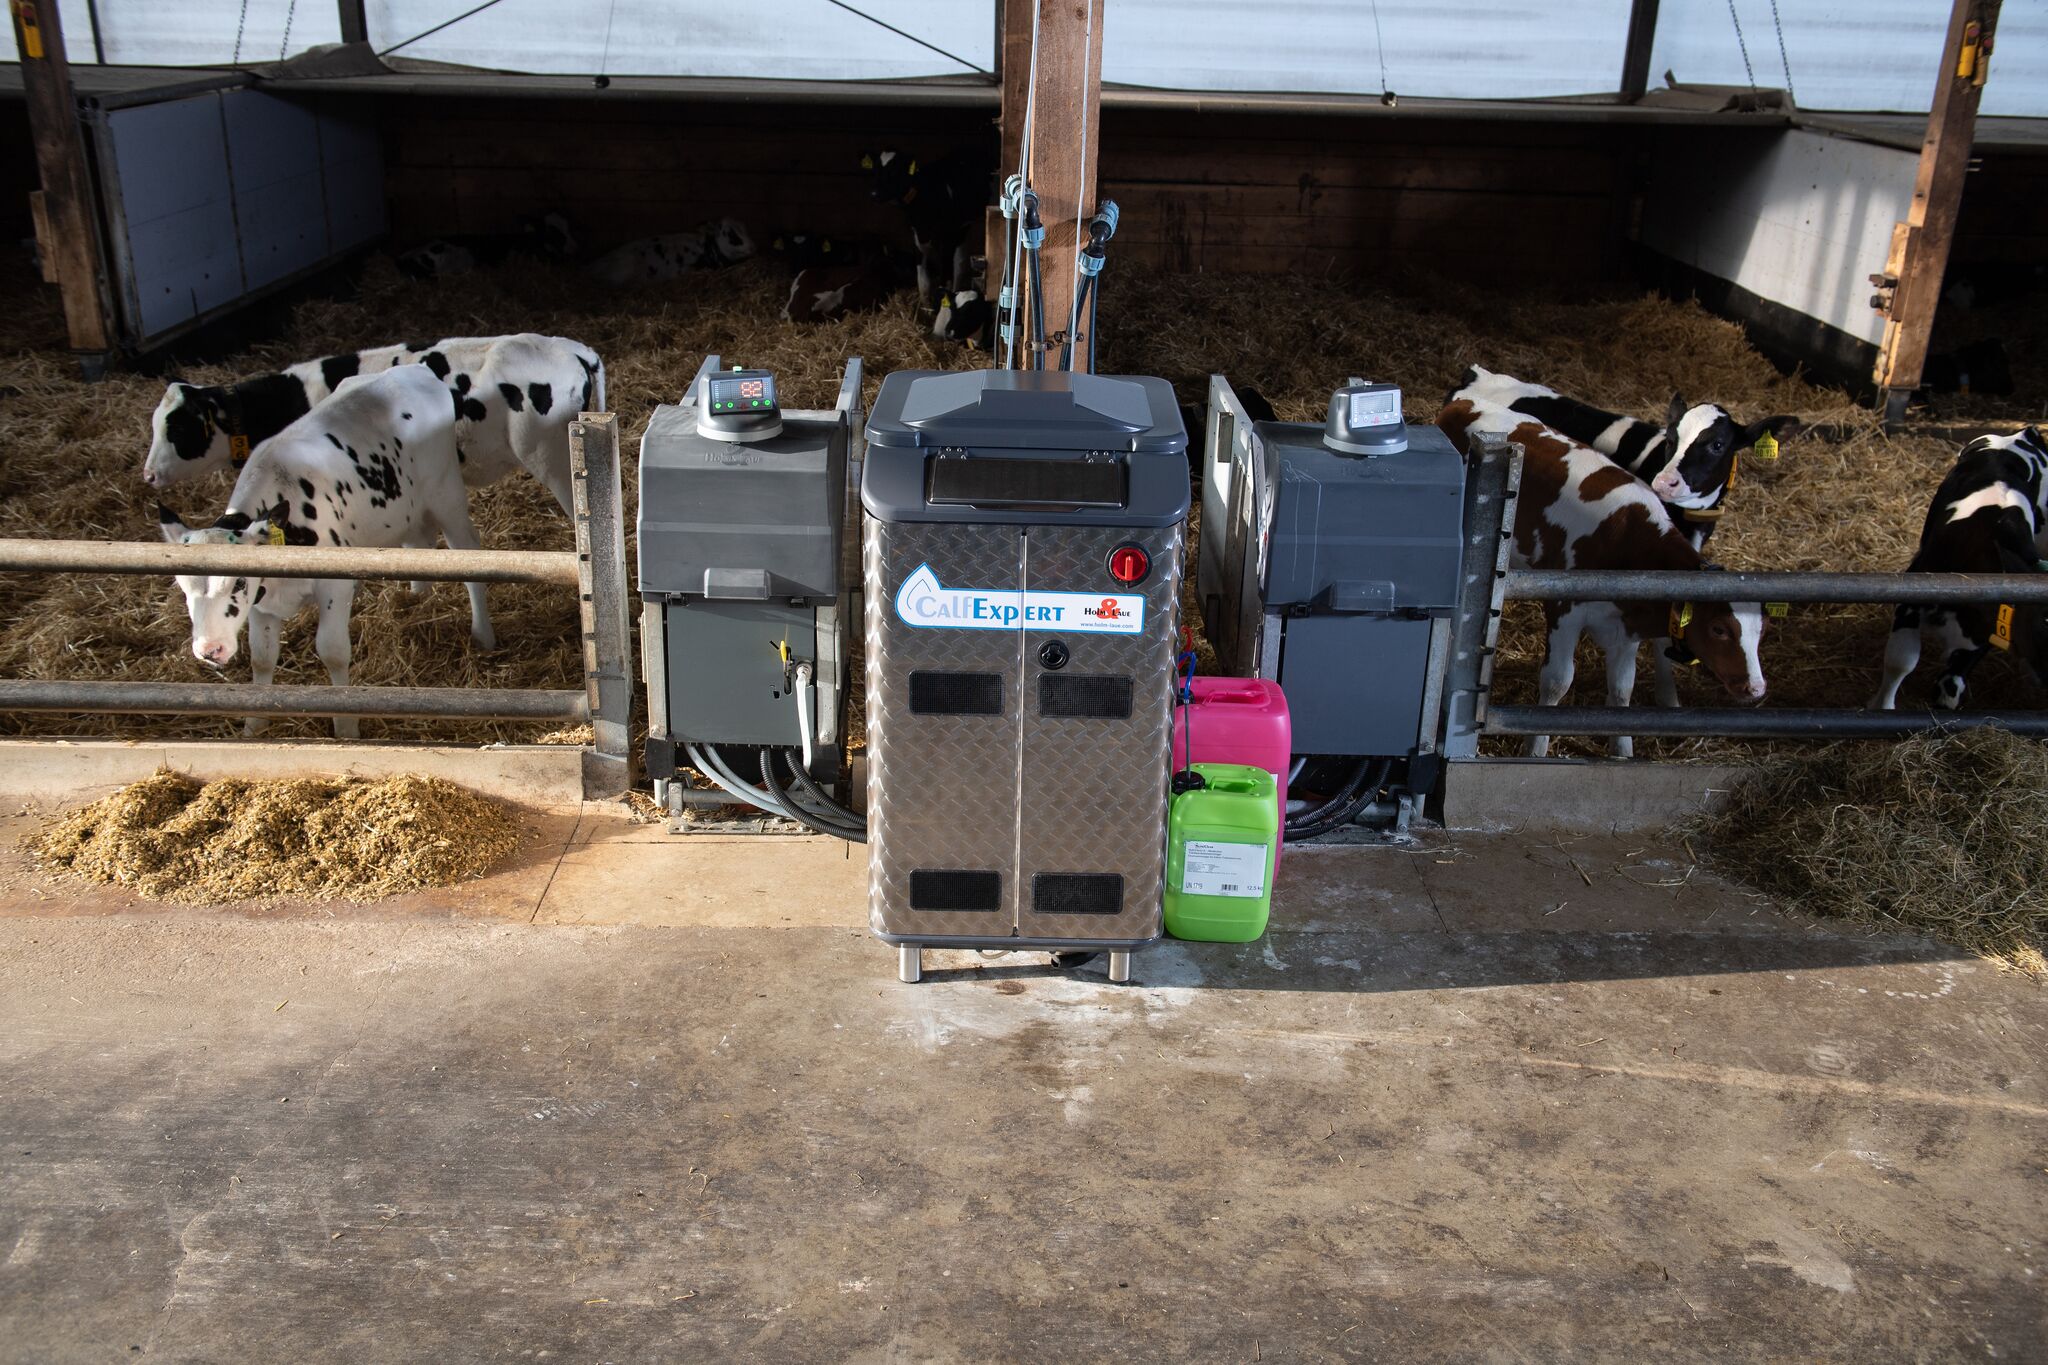 Stainless steel calf milk mixer from Livestock Supplies Ltd